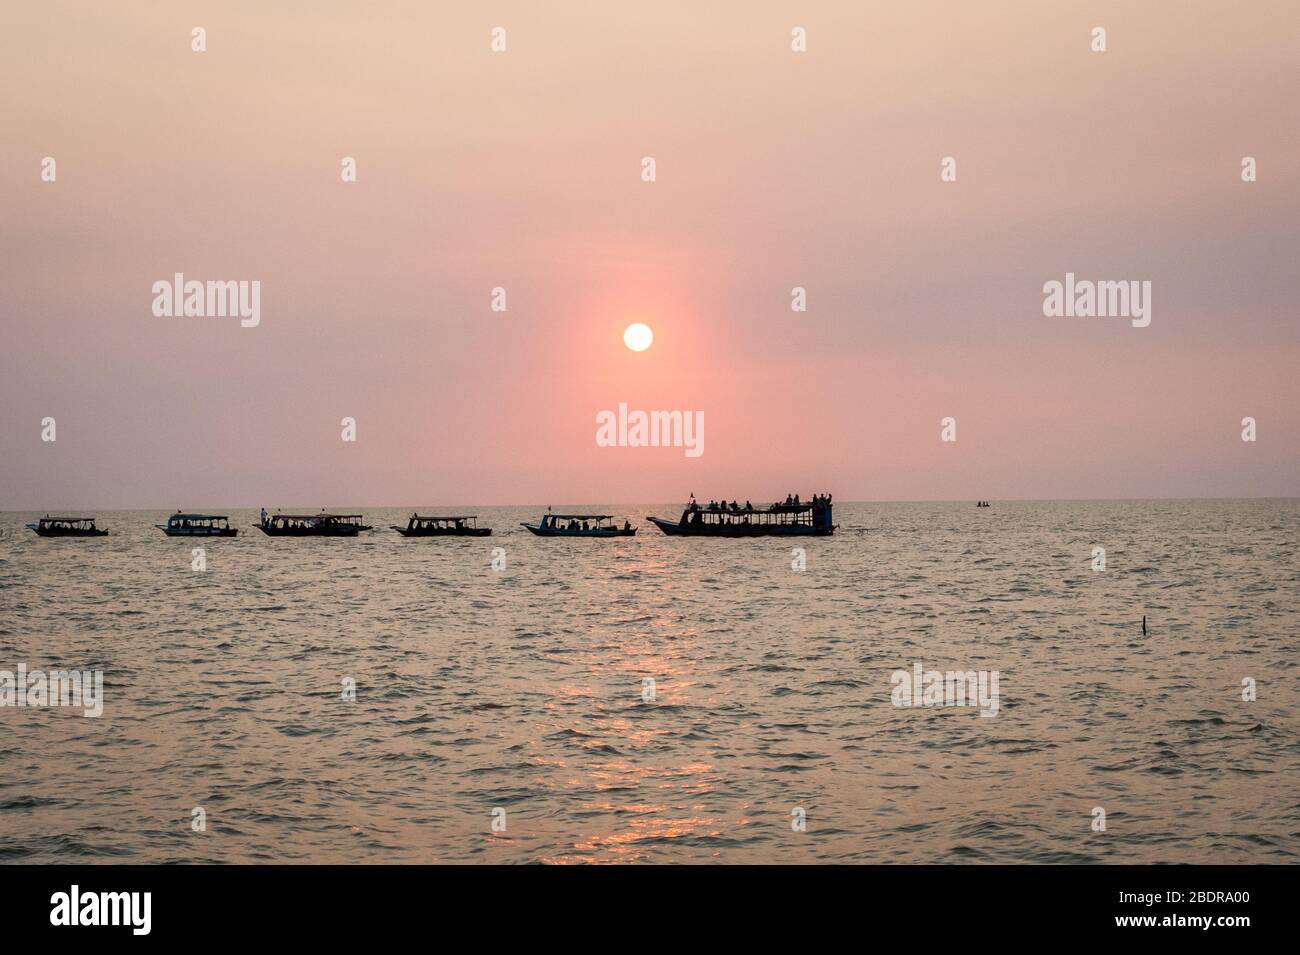 Sonnenuntergang am Tonle SAP See Kampong Phluk, Kambodscha. Fischerboote und Touristenboote, die man bei Sonnenuntergang sieht. Stockfoto